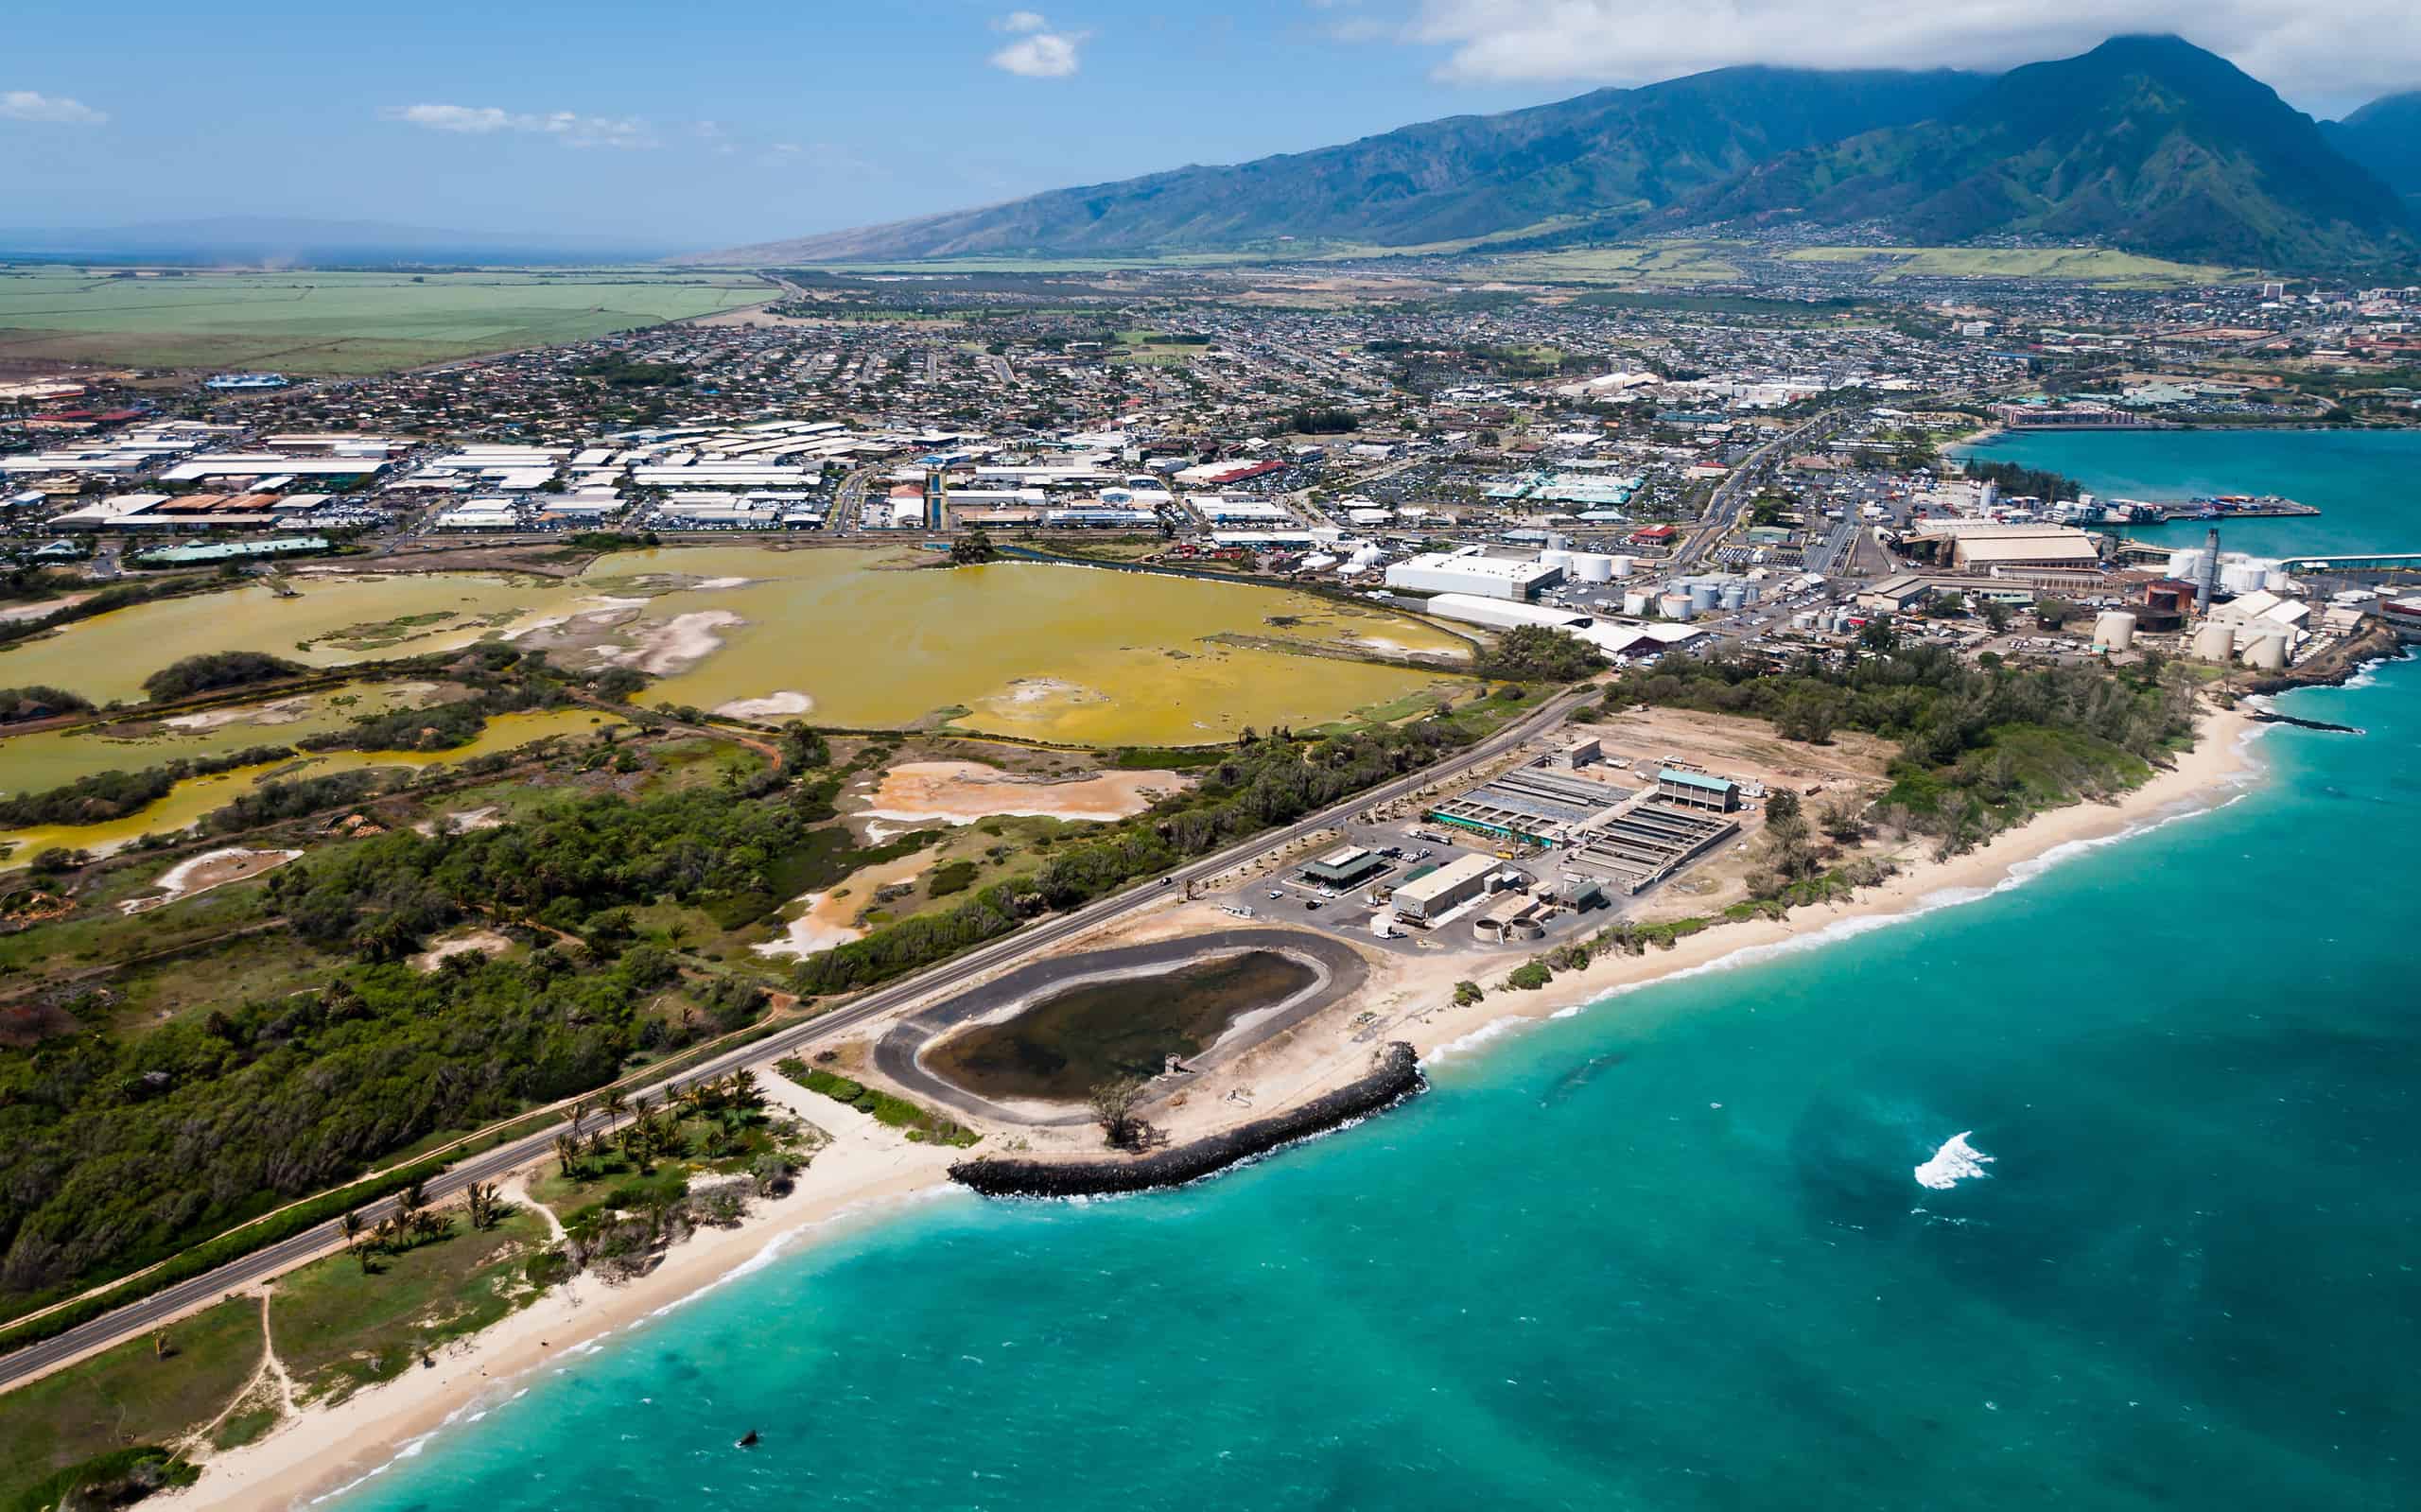 An aerial view of a Maui beach